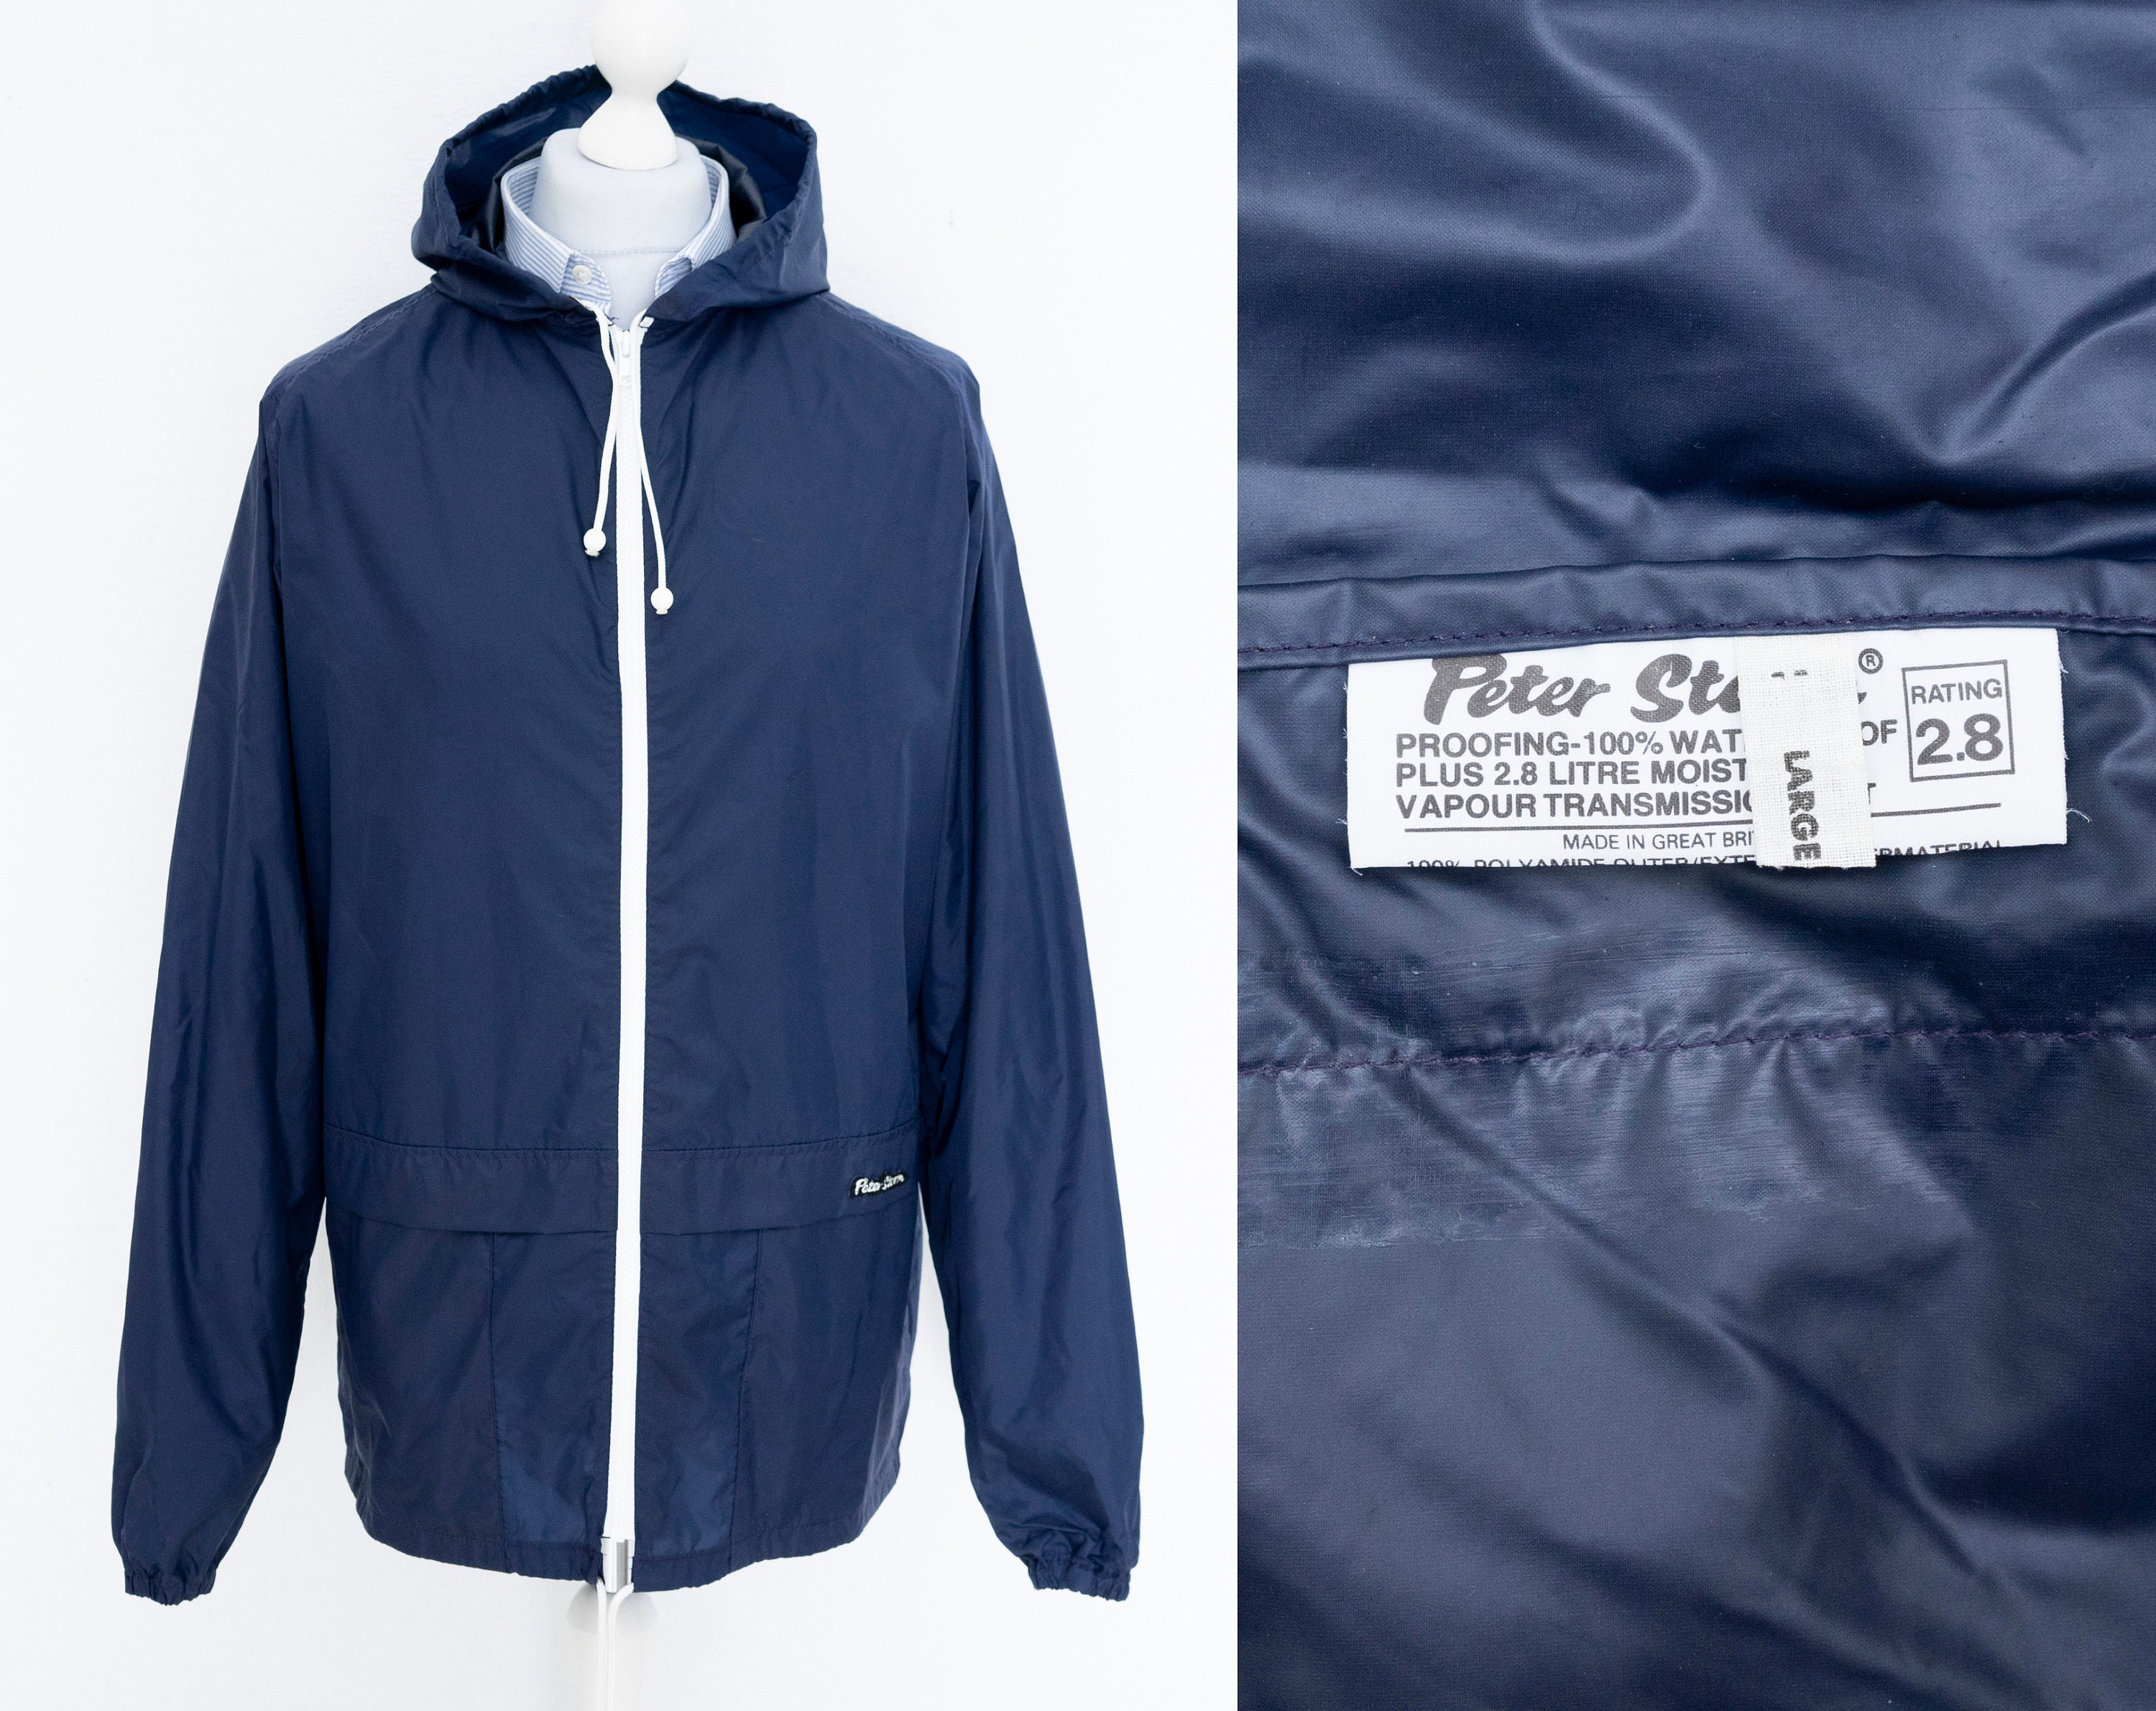 Peter Storm Original Cagoule Vintage Rain Jacket Navy Blue Breathable  Casuals Men's Large 